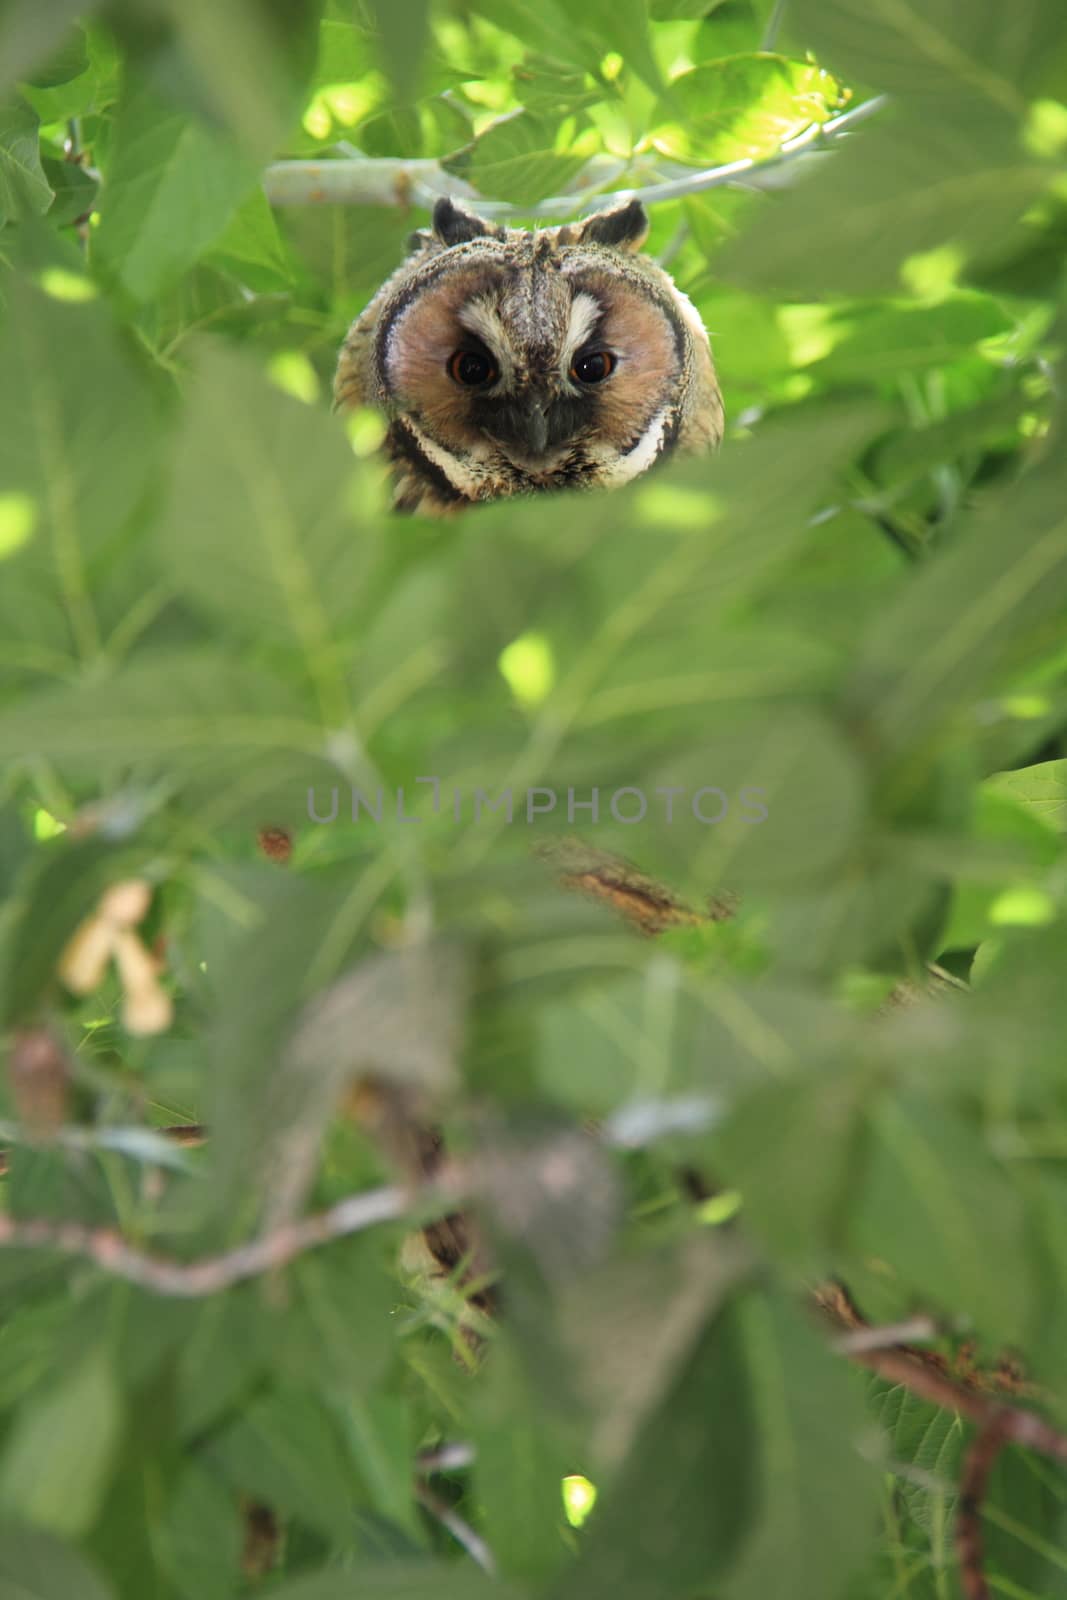 bewildered owl looking on tree